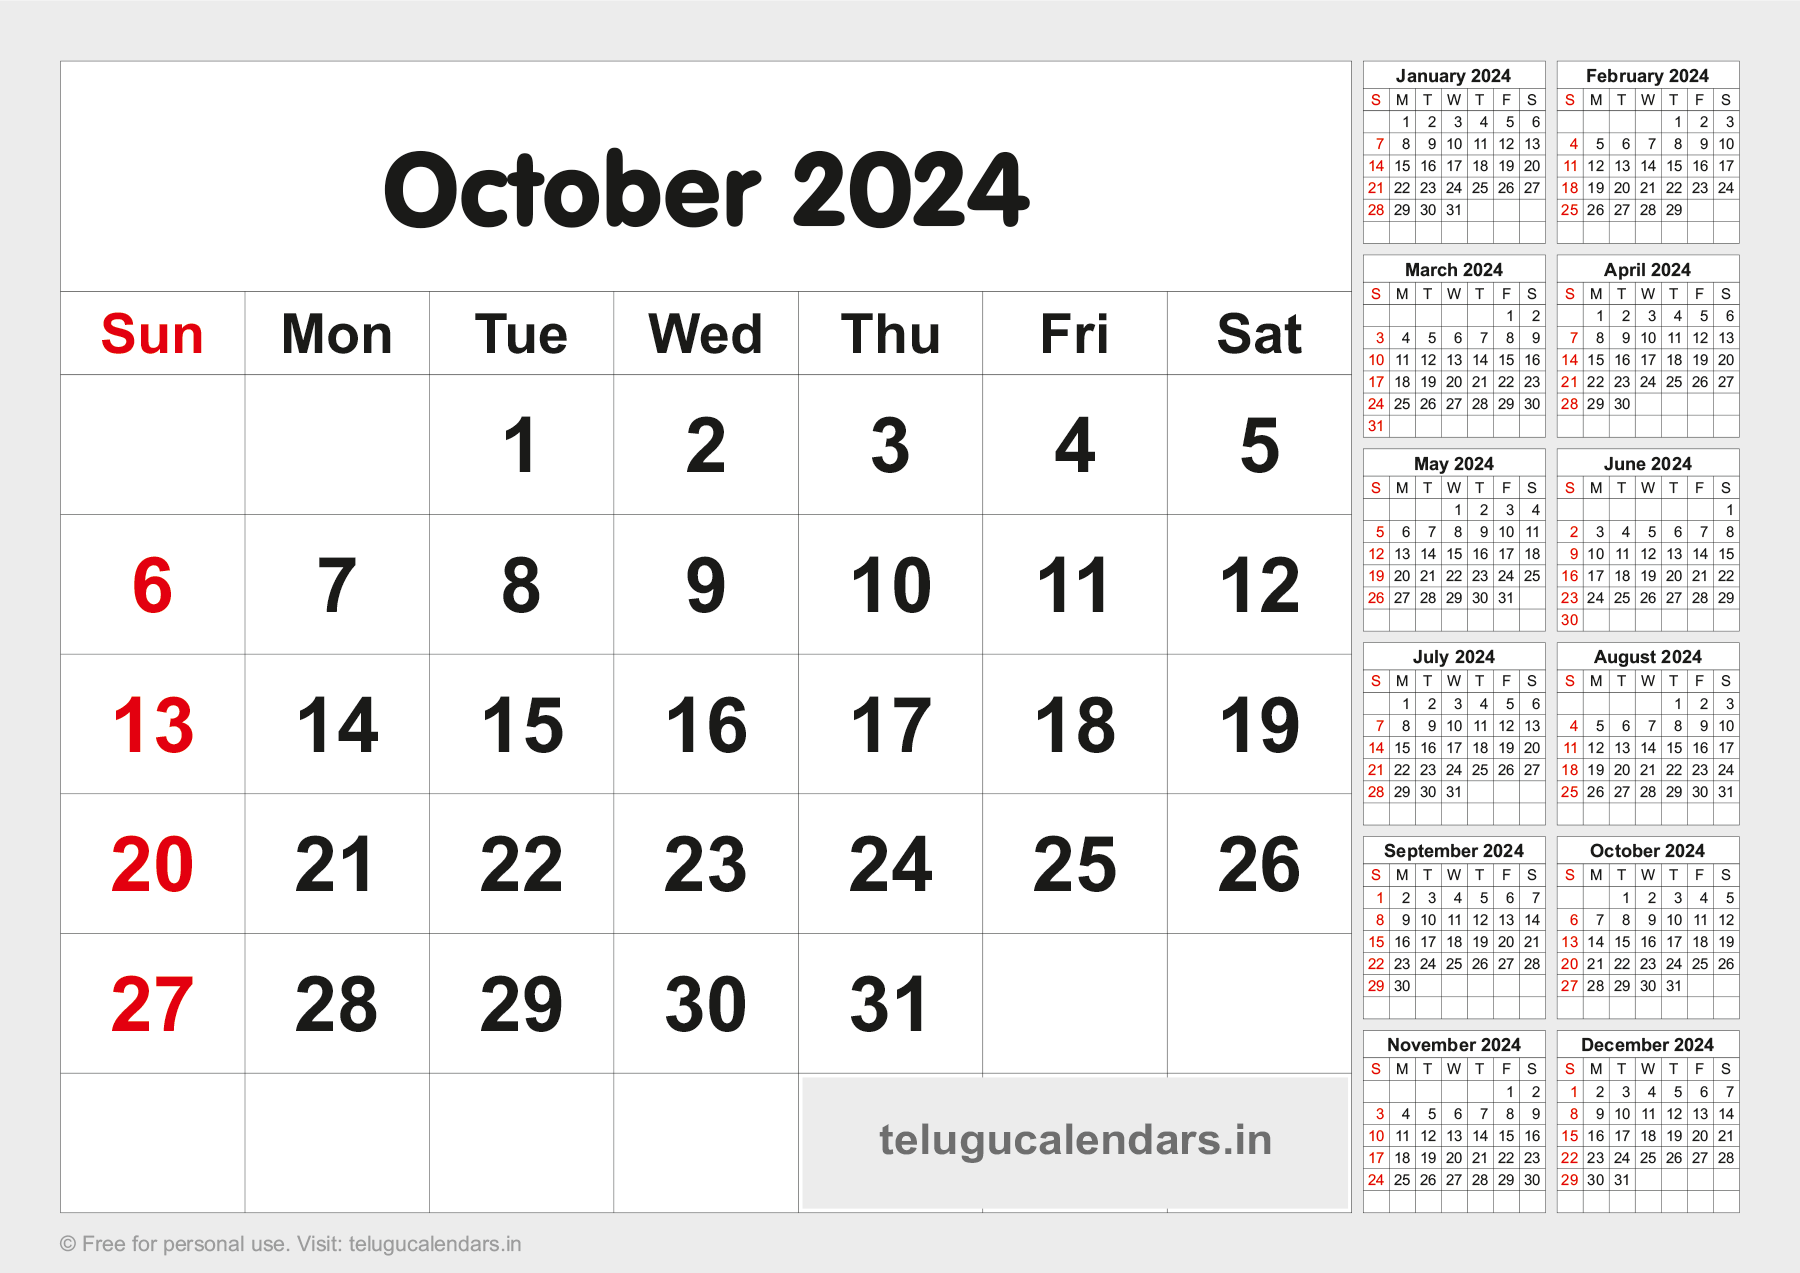 Telugu Blank Calendar 2024 October 2024 Telugu Calendar PDF